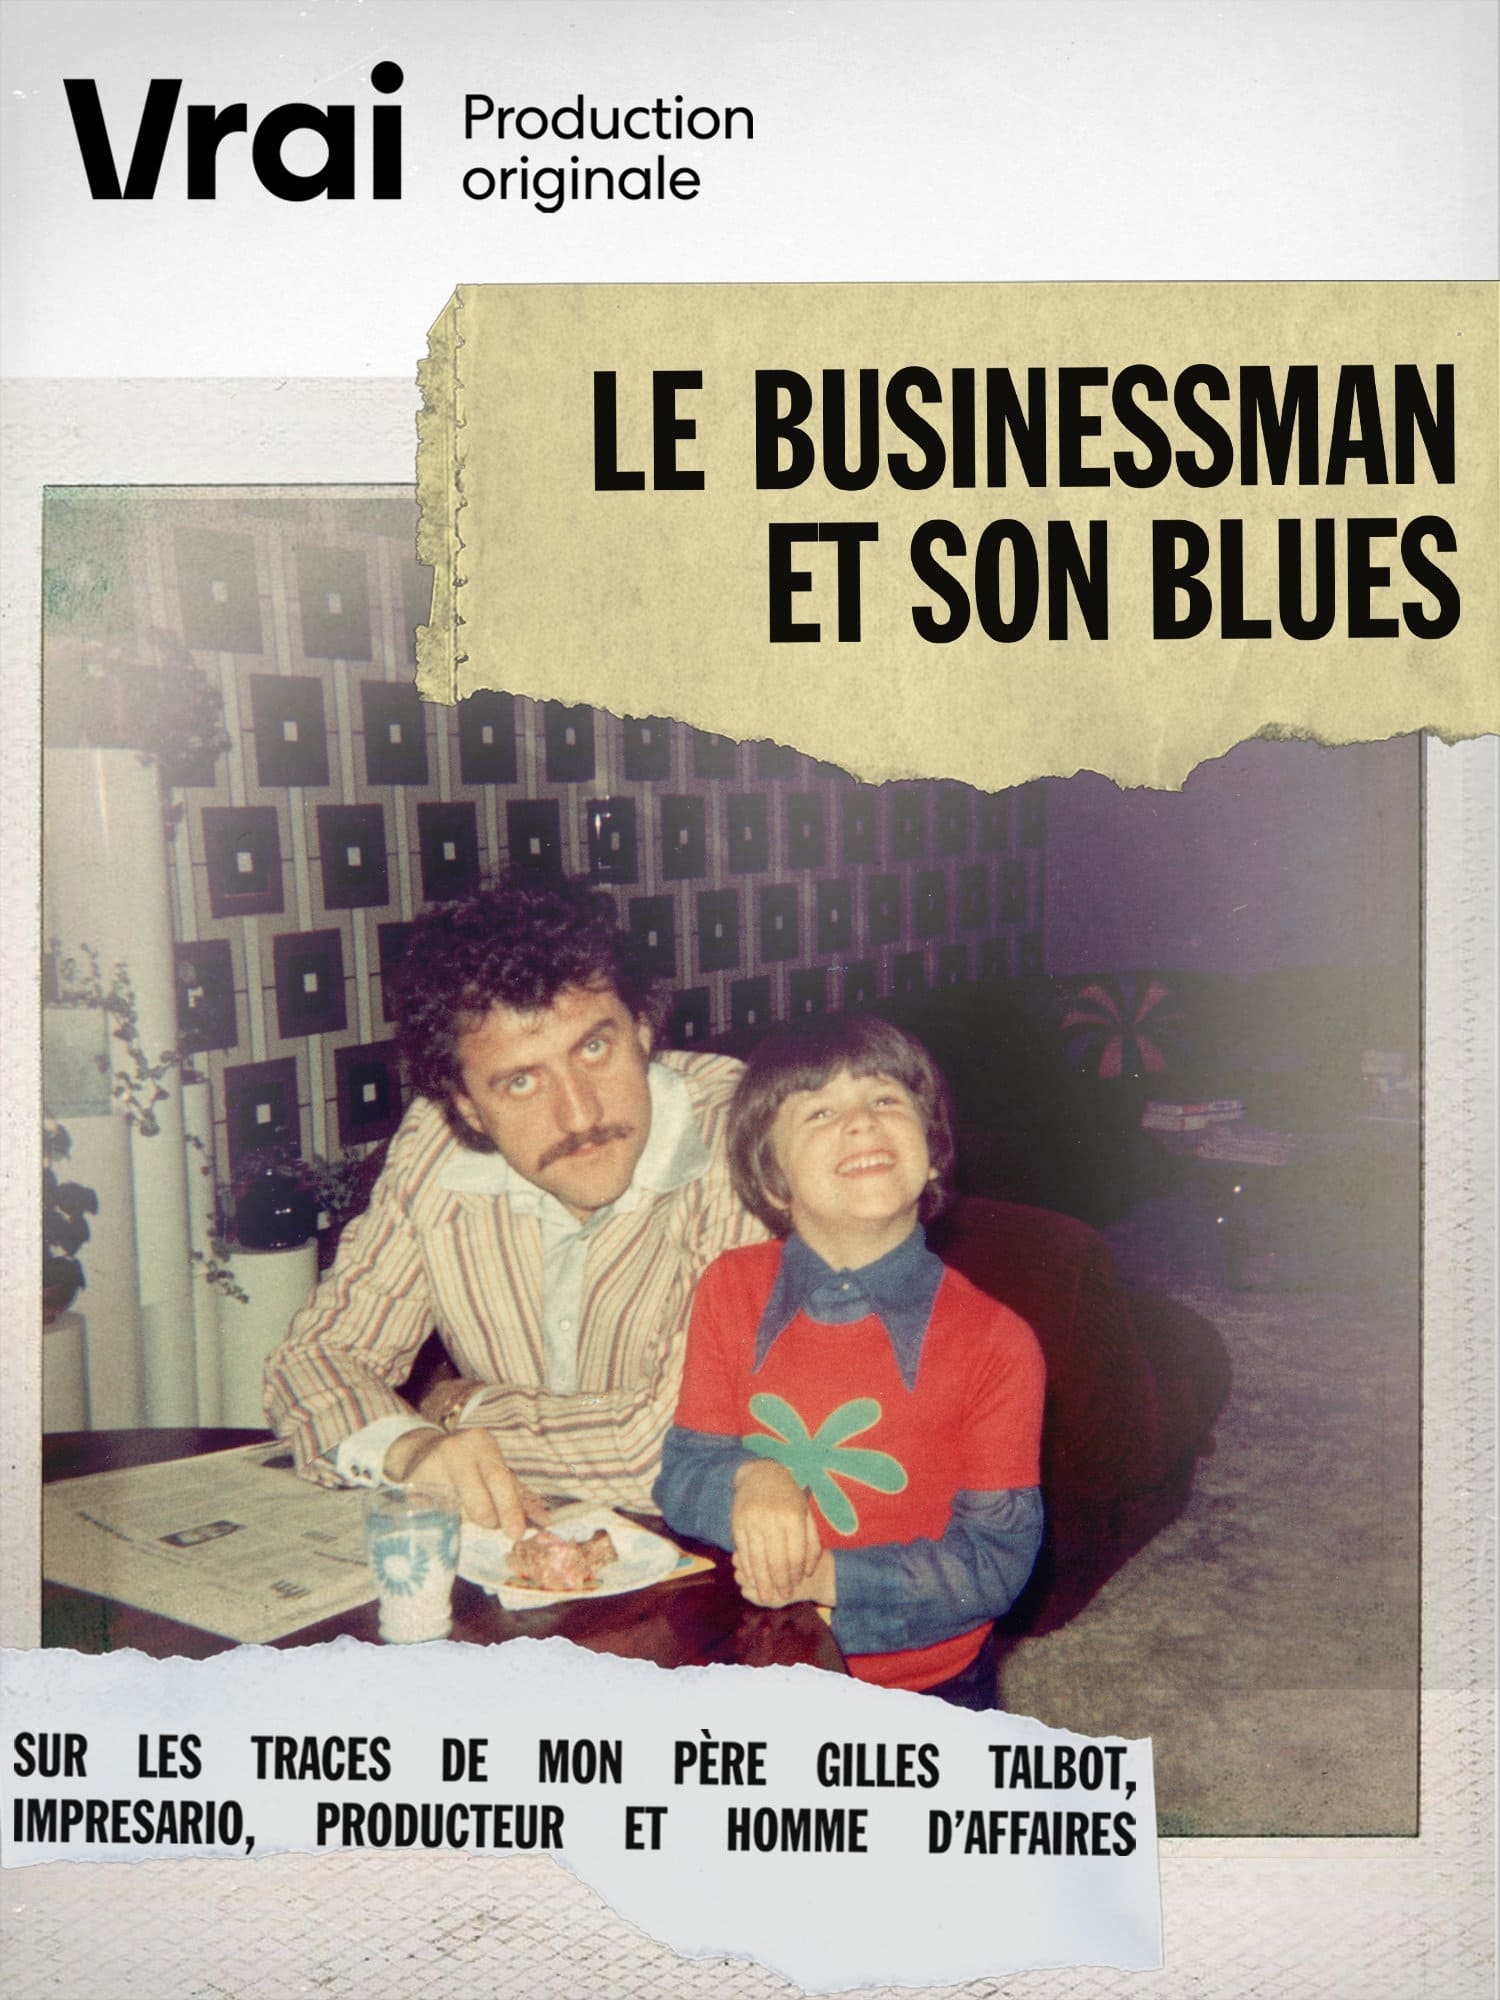 Le businessman et son blues